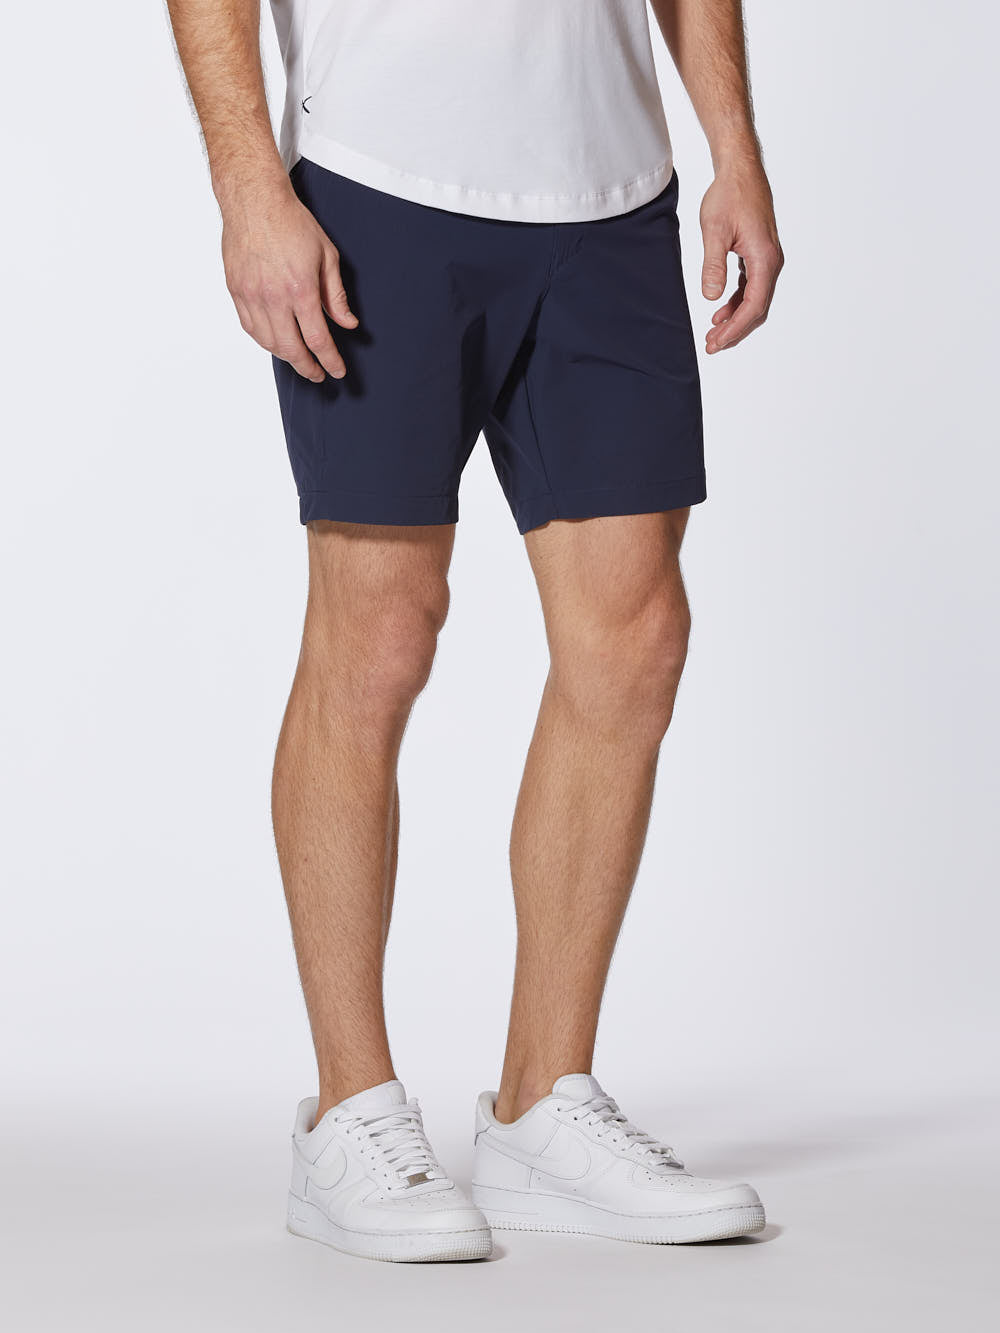 AO Shorts